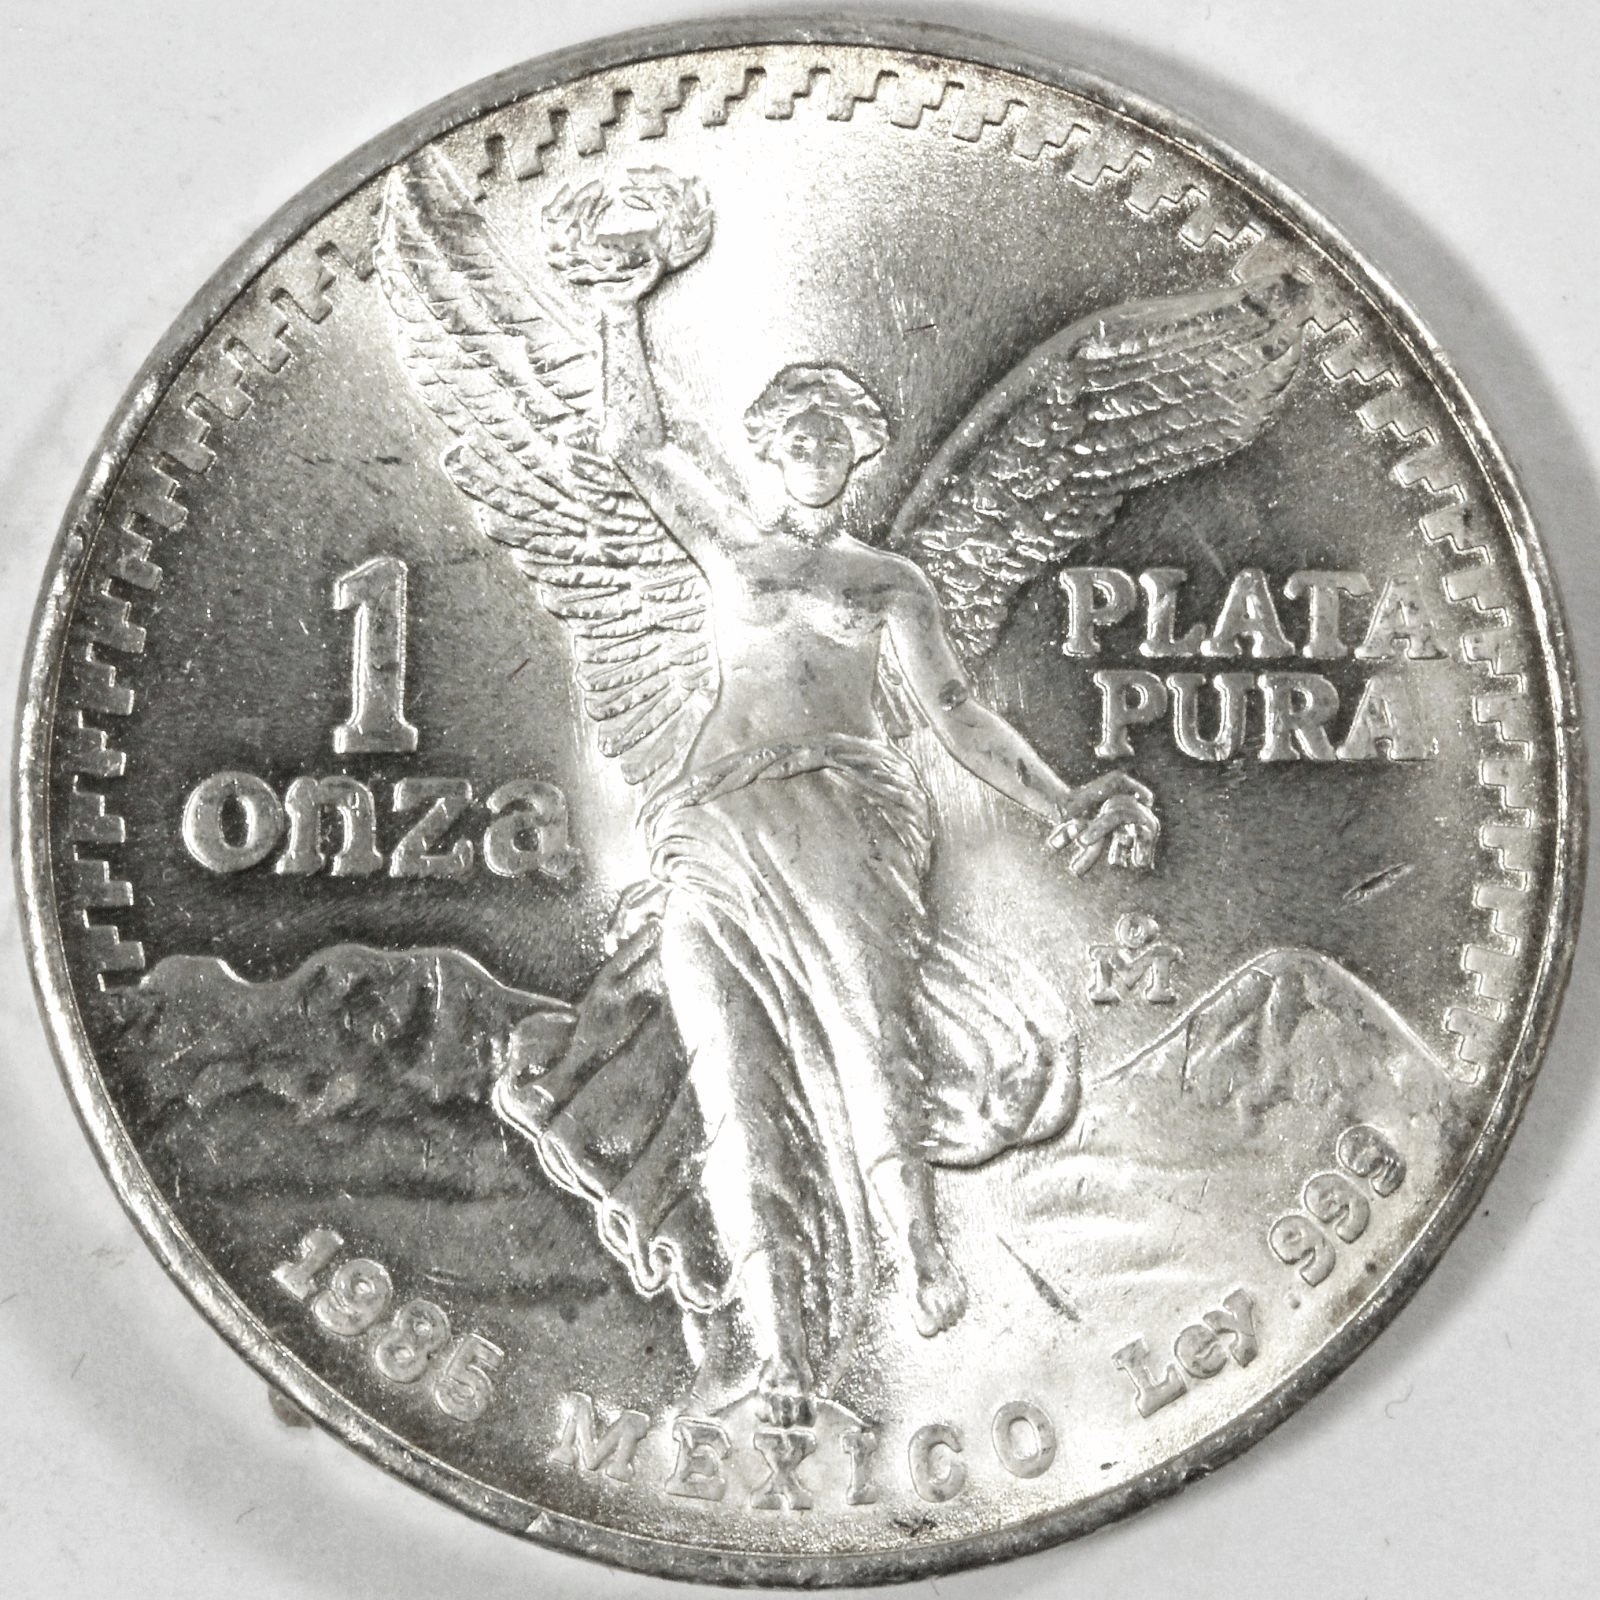 1985年発行のメキシコ の1オンザ銀貨です。 | ミスターコインズ